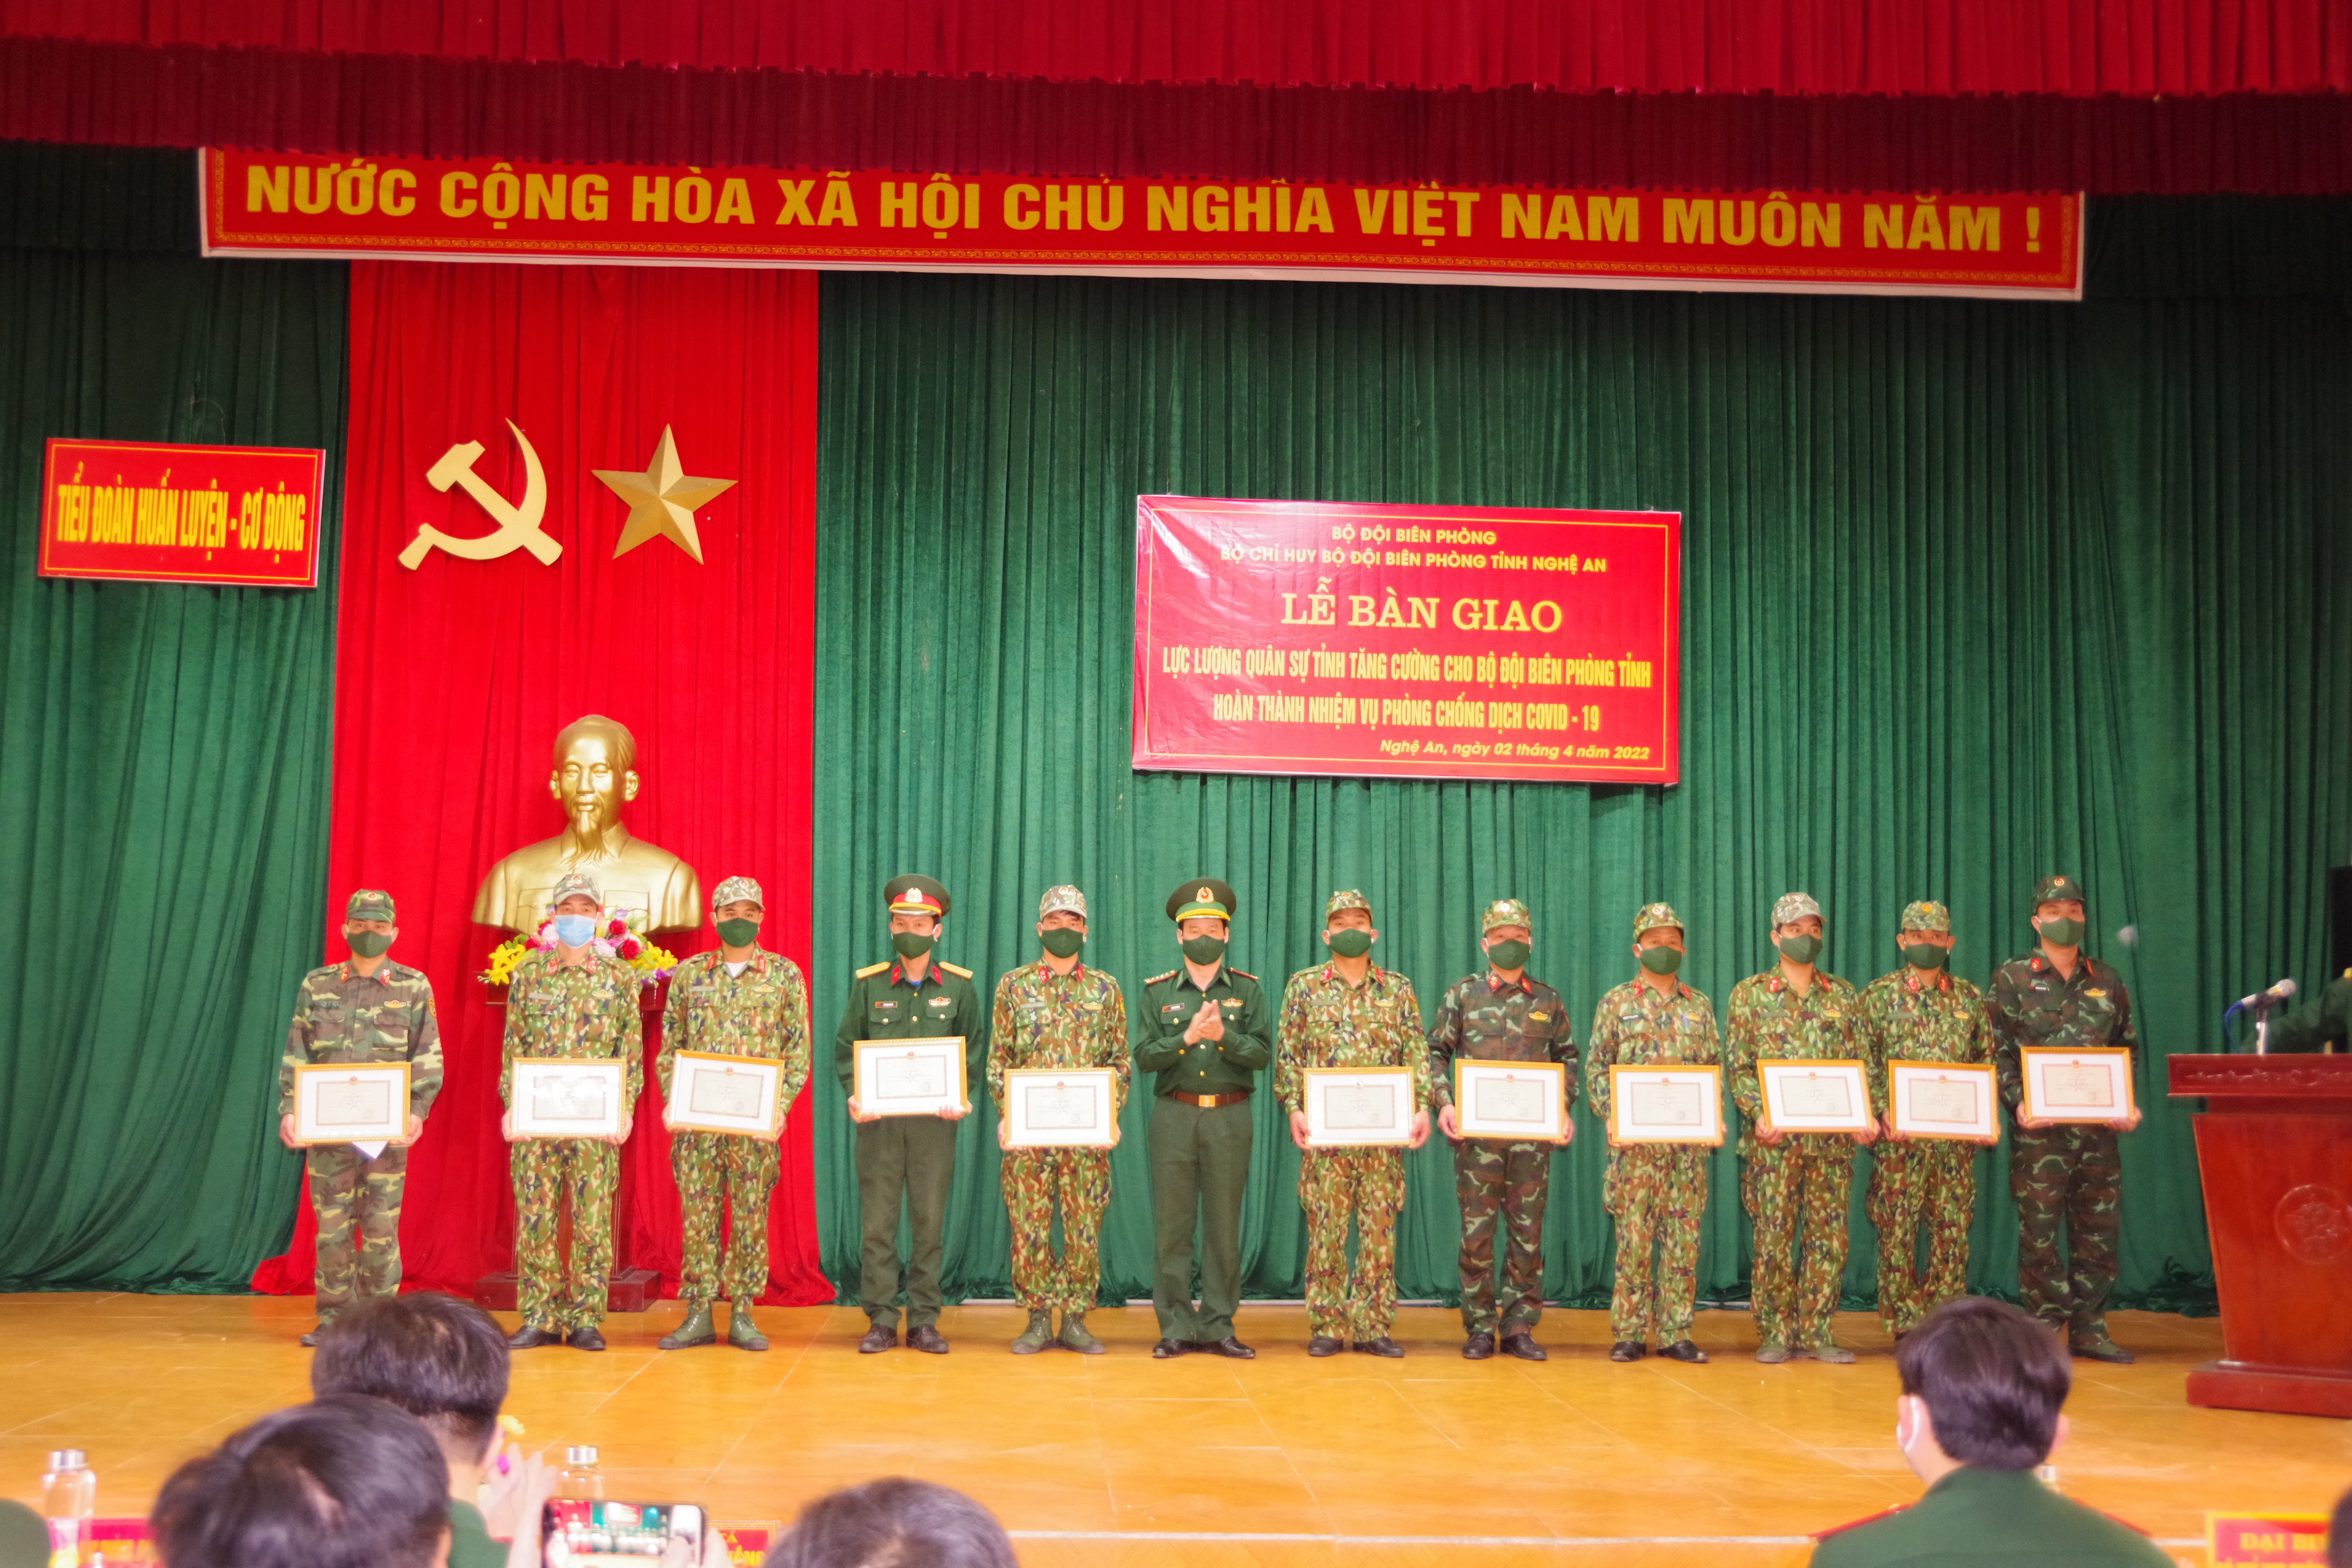 Đại tá Hồ Hữu Thắng - Phó Chỉ huy trưởng BĐBP Nghệ An tặng giấy khen của Bộ đội Biên phòng Nghệ An cho 11 cá nhân thuộc Bộ Chỉ huy Quân sự tỉnh Nghệ An trong thực hiện nhiệm vụ phòng chống dịch.